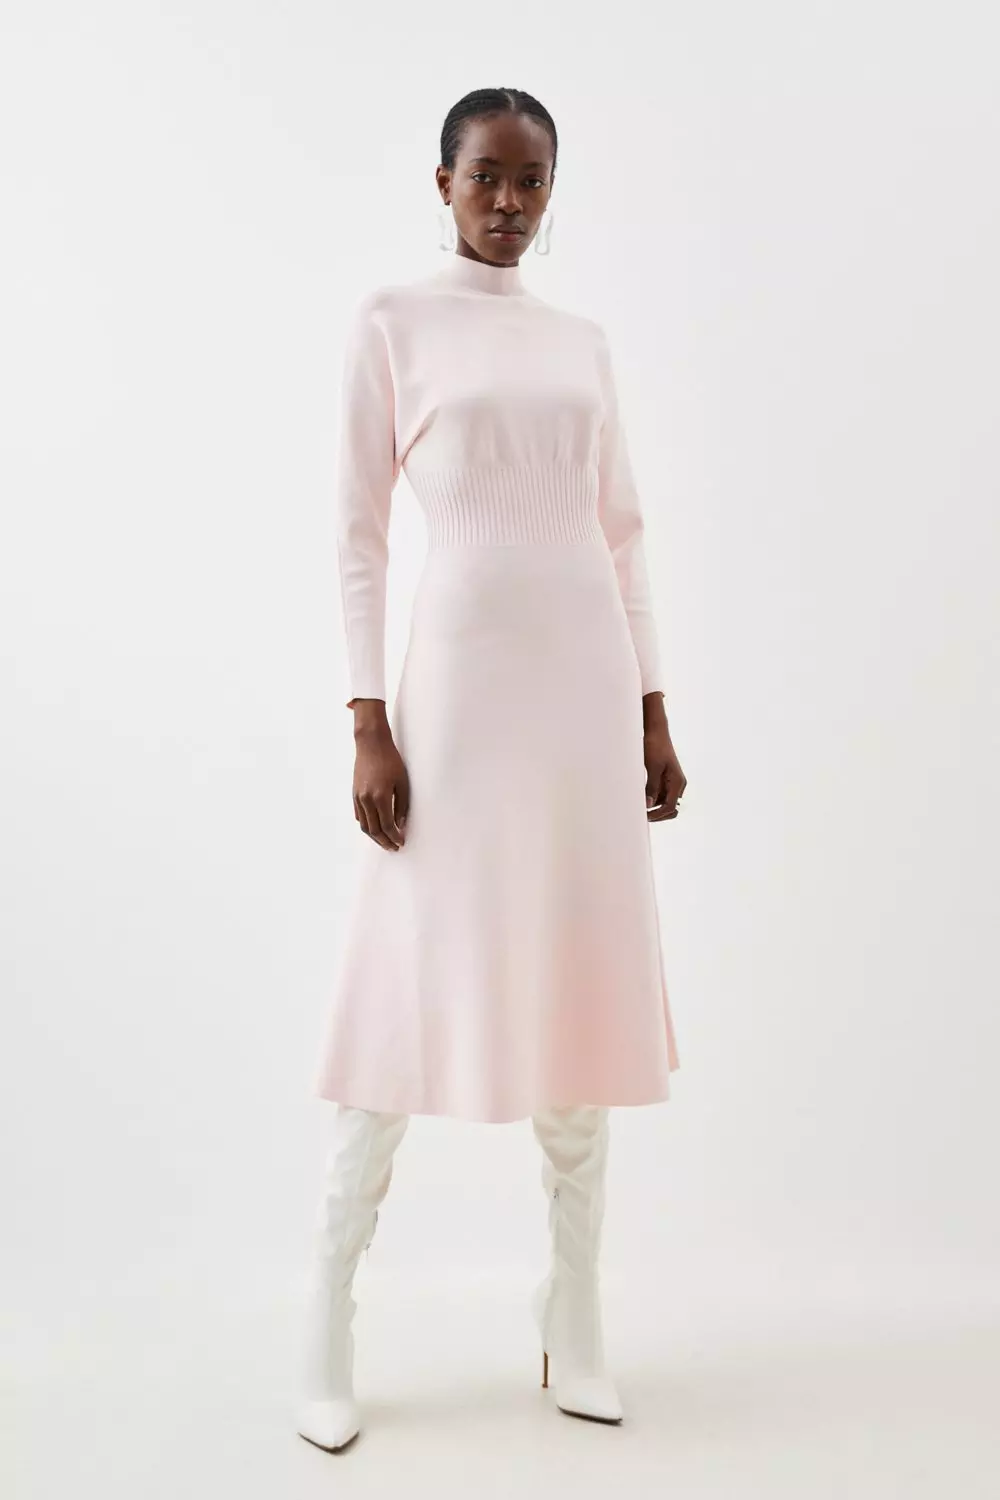 Premium Viscose Blend Body Contouring Cinched Waist Knit Batwing Dress |  Karen Millen